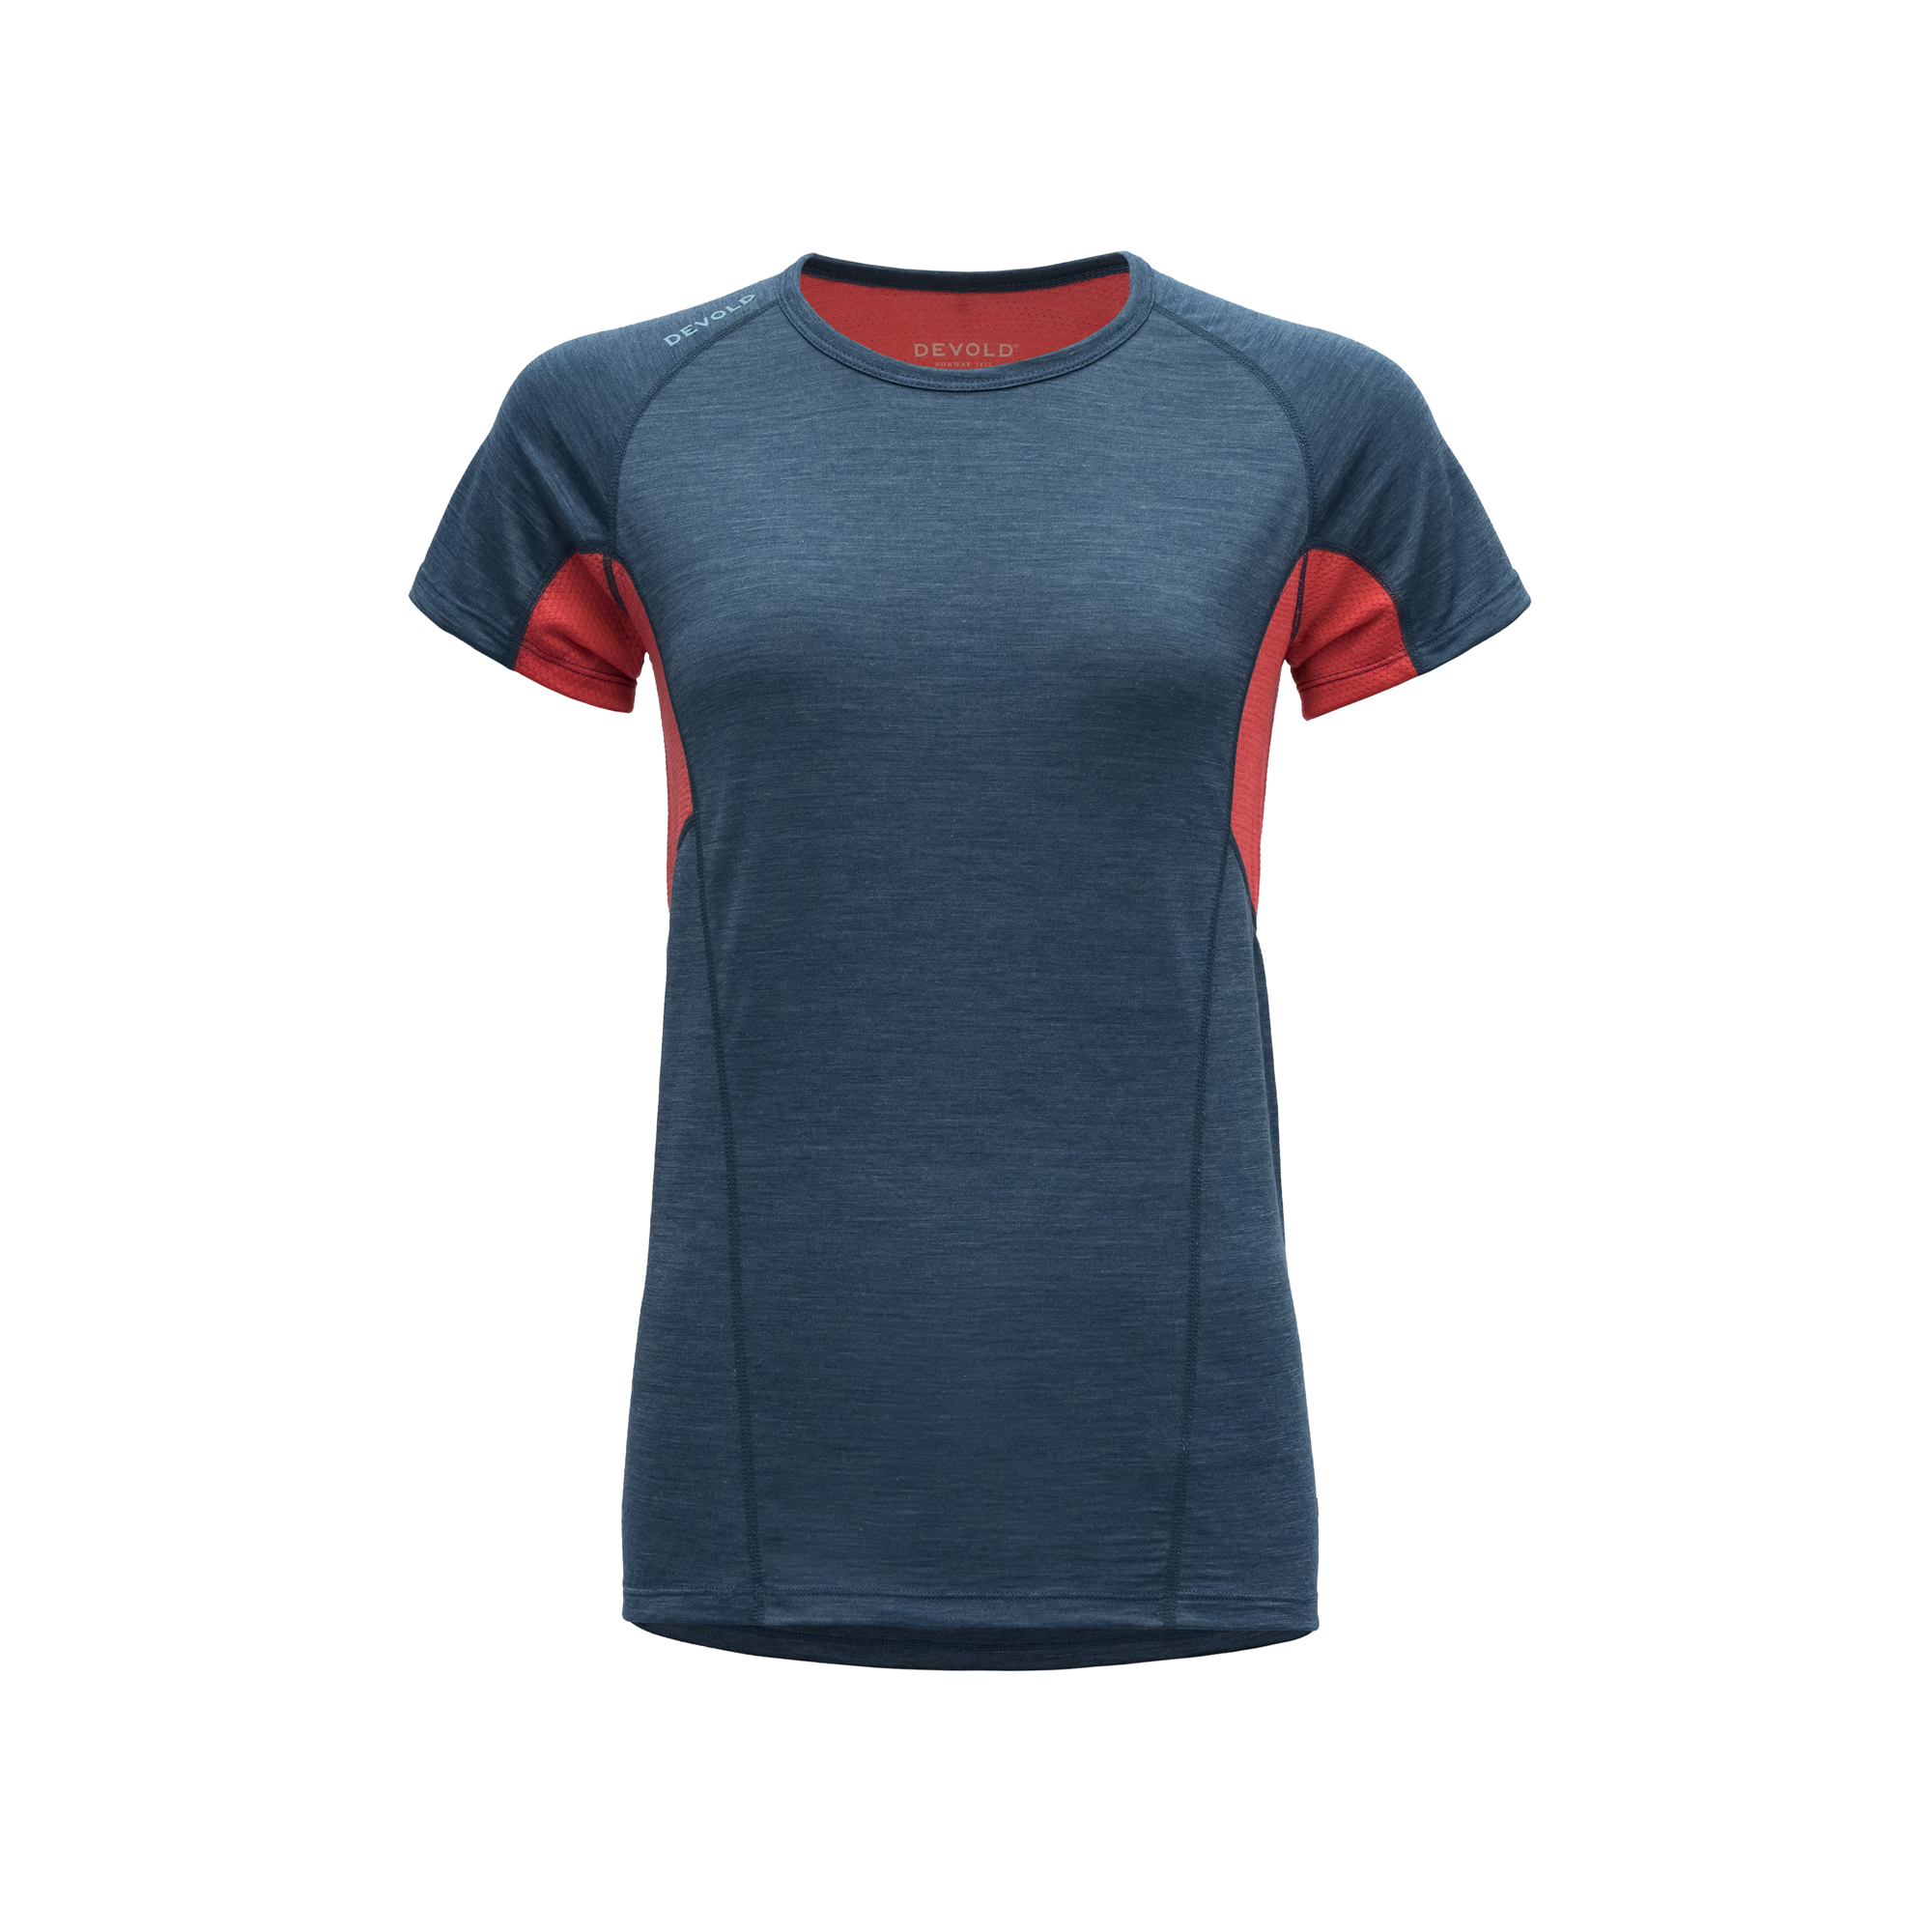 Devold Merino 130 tričko s krátkým rukávem - dámské - oranžová/modrá Velikost: L